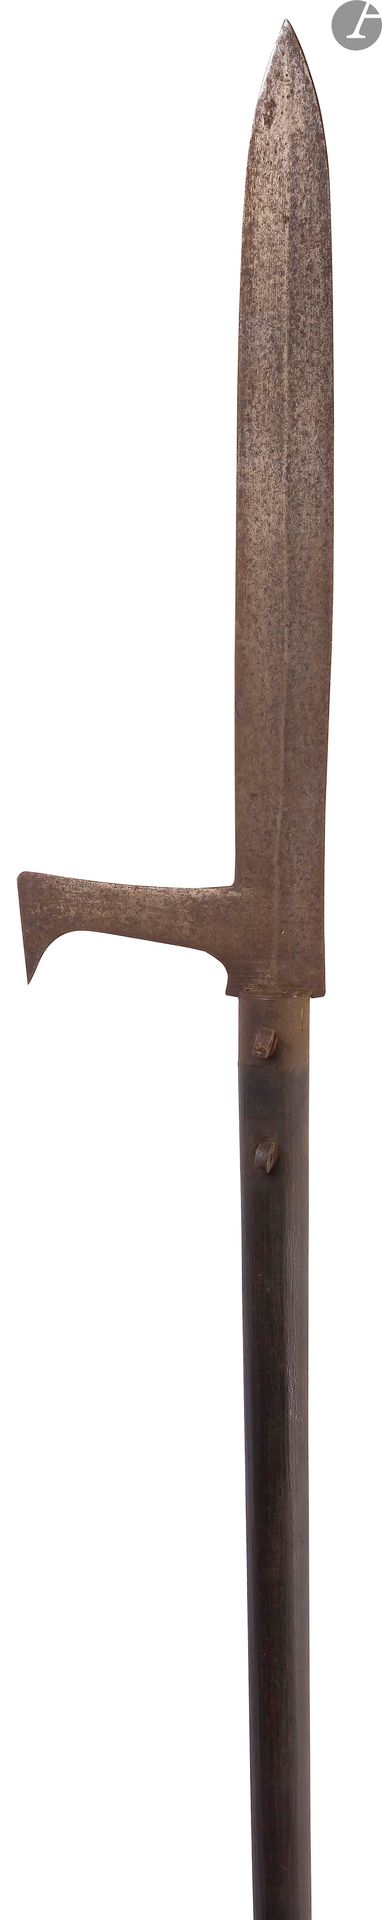 Null 
日本的高射炮。

熏黑的木质手柄。 



19世纪。



长度：225厘米



A.B.E (有凹陷的金属)